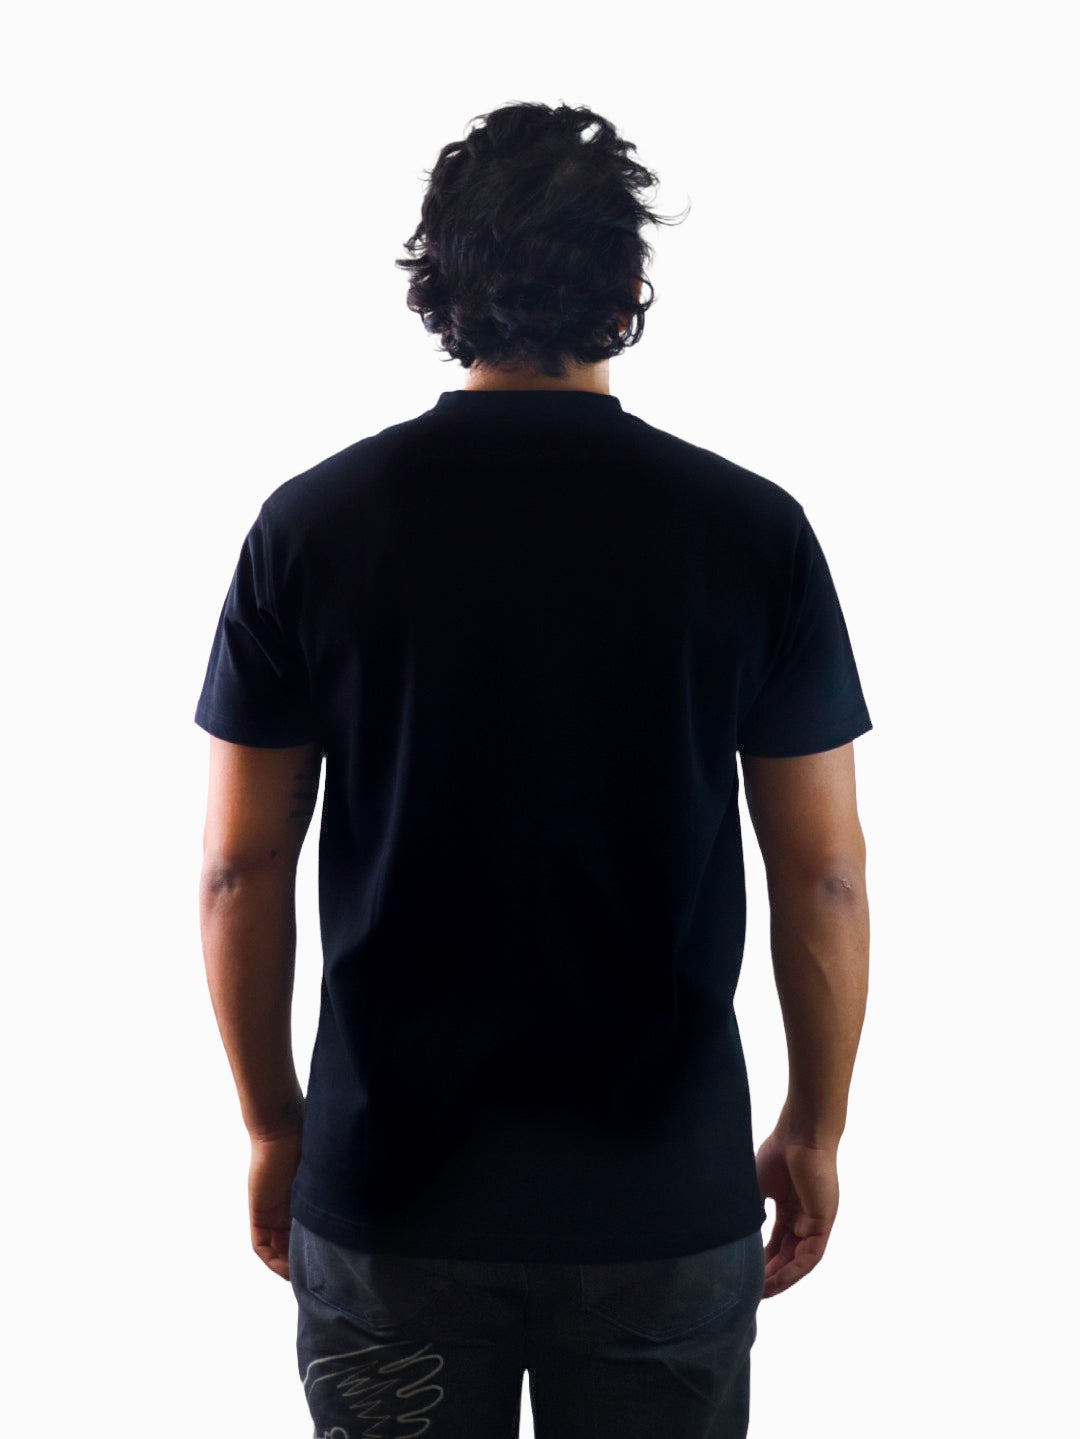 Exetees Regular V-Neck T-Shirt (Black)